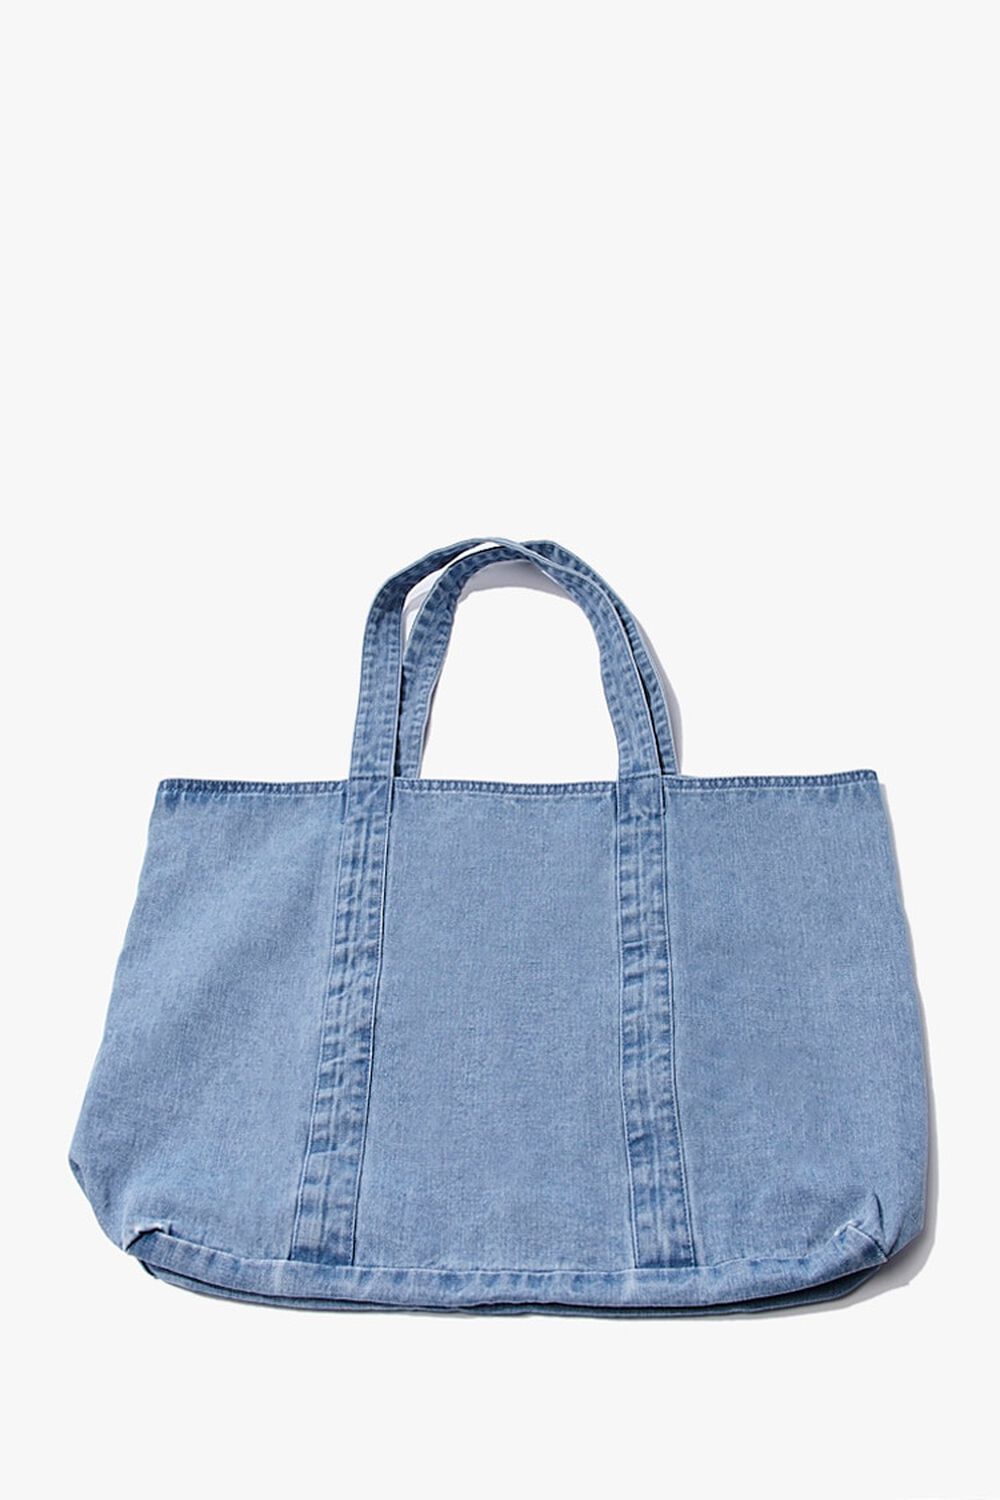 Denim Tote Bags for Women